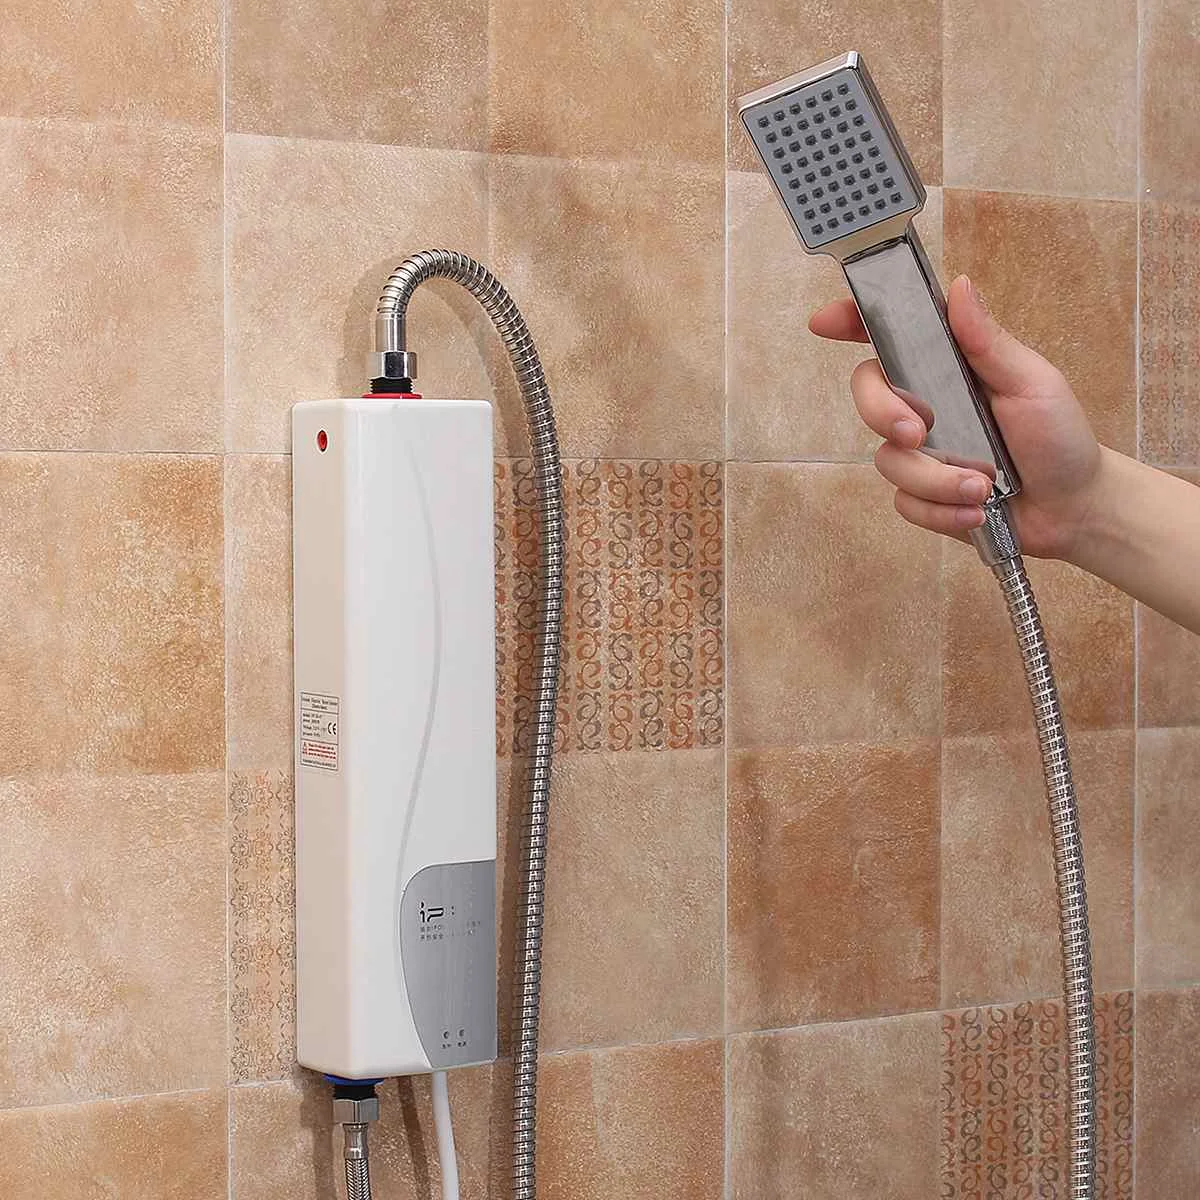 

220 В 3000 Вт Электрический водонагреватель мгновенный Электрический внутренний душ безрезервуарный водонагреватель для кухни ванной комнат...